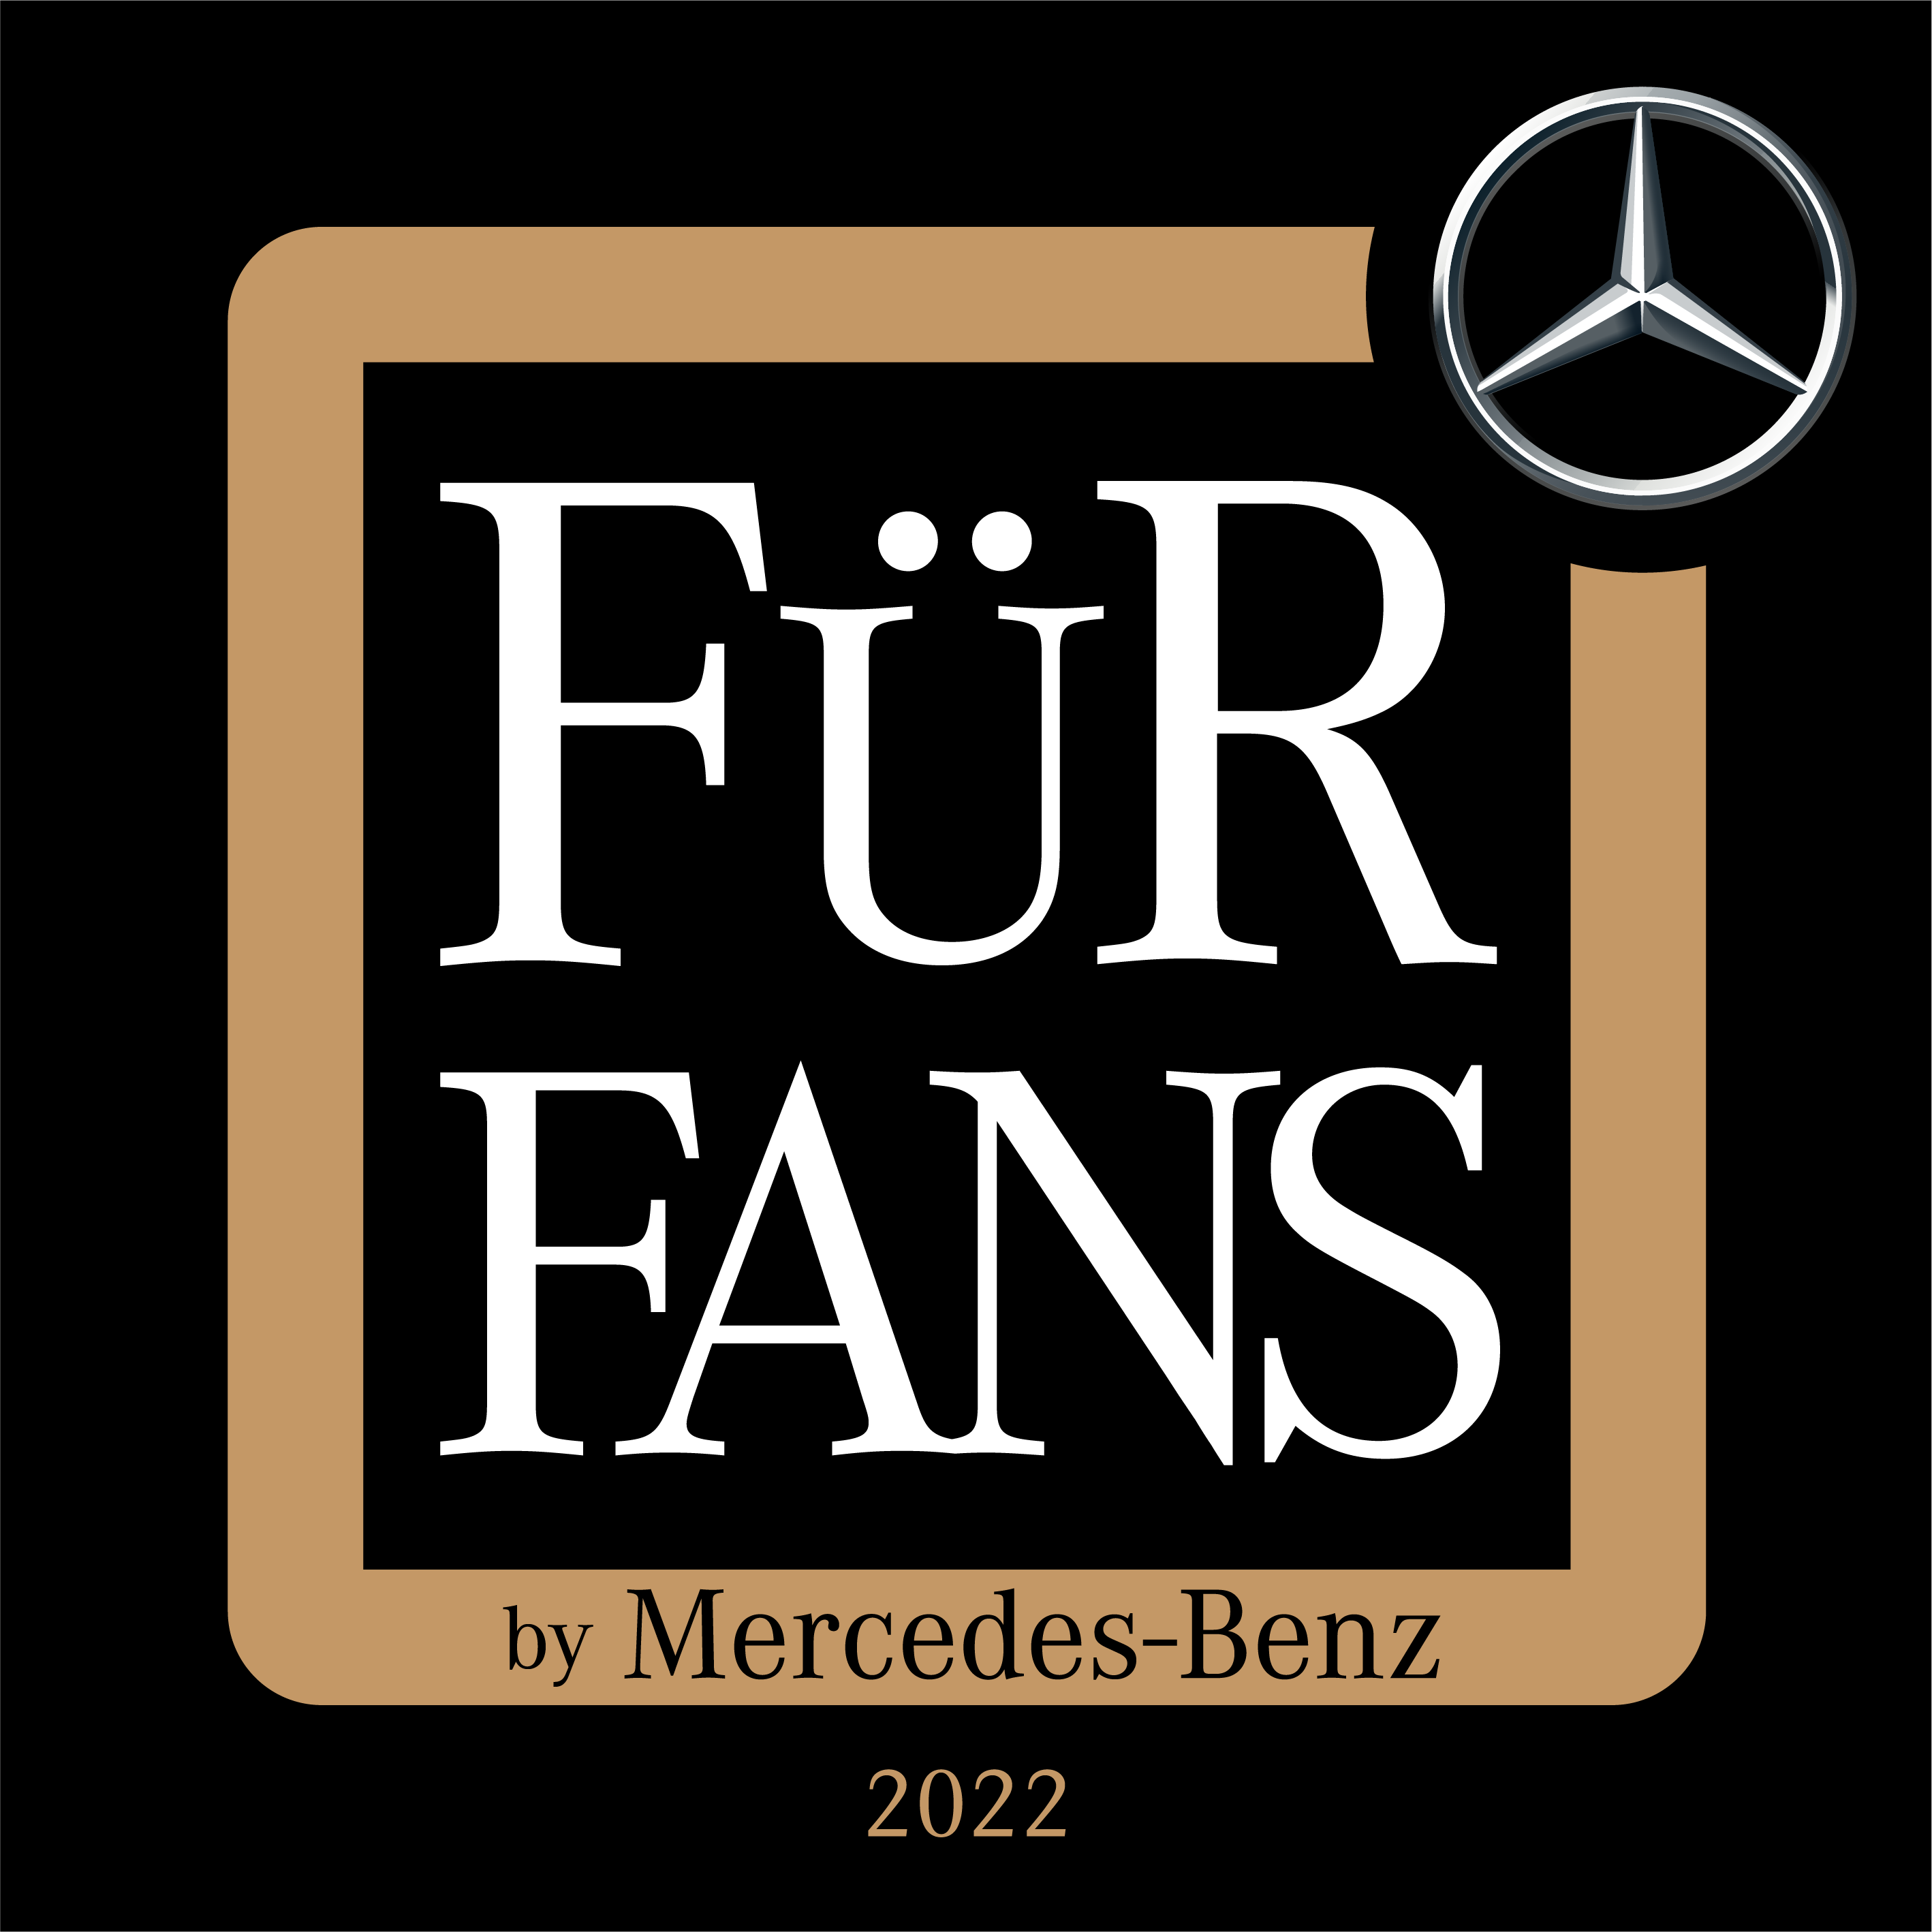 Logo Mercedes-Benz Für Fans 2022